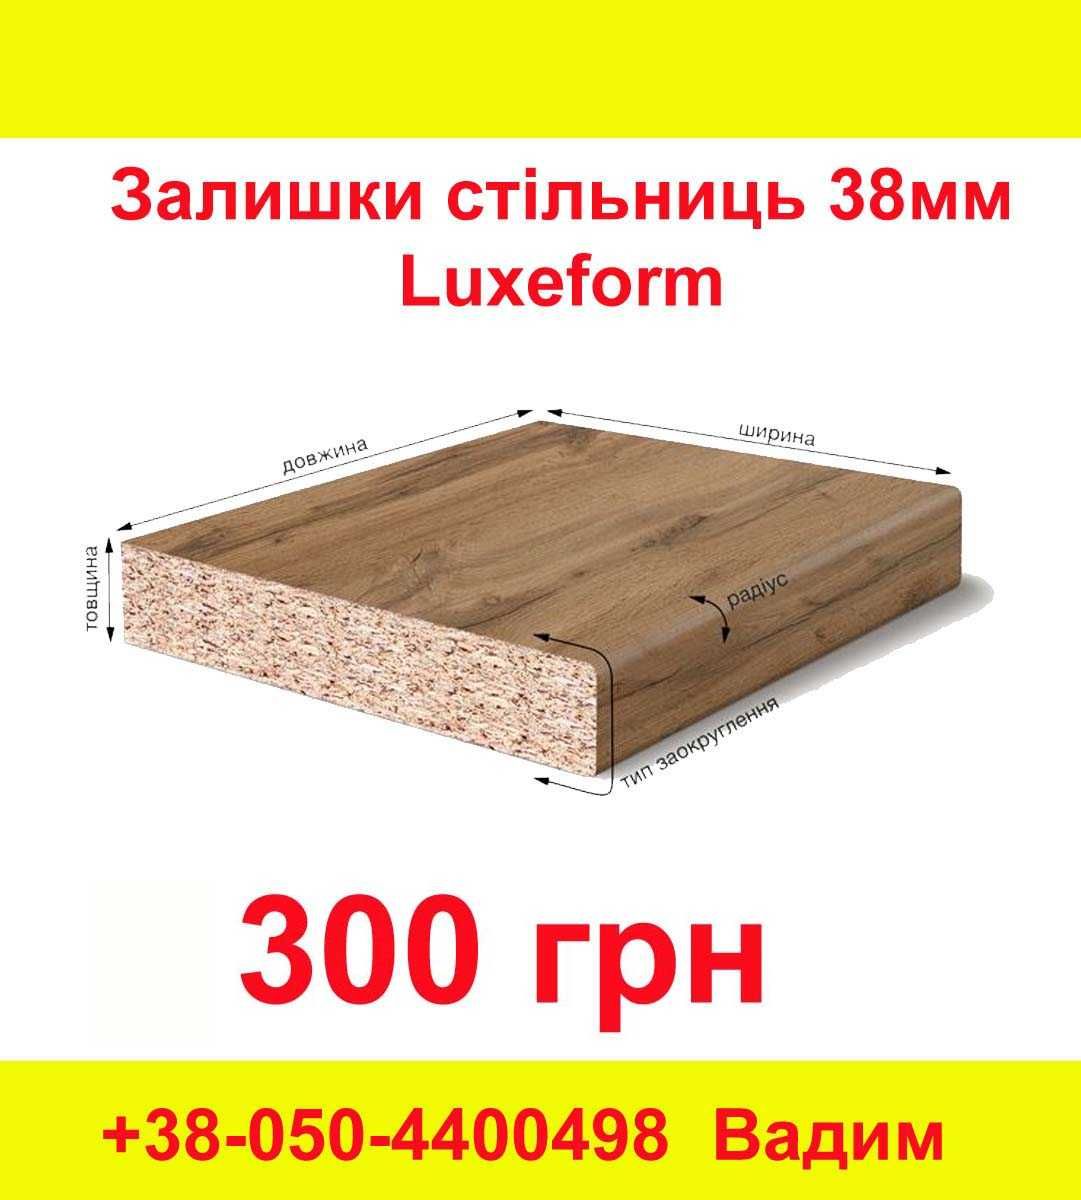 Залишки Стільниць 38мм ТМ "Luxeform" - 300 грн.